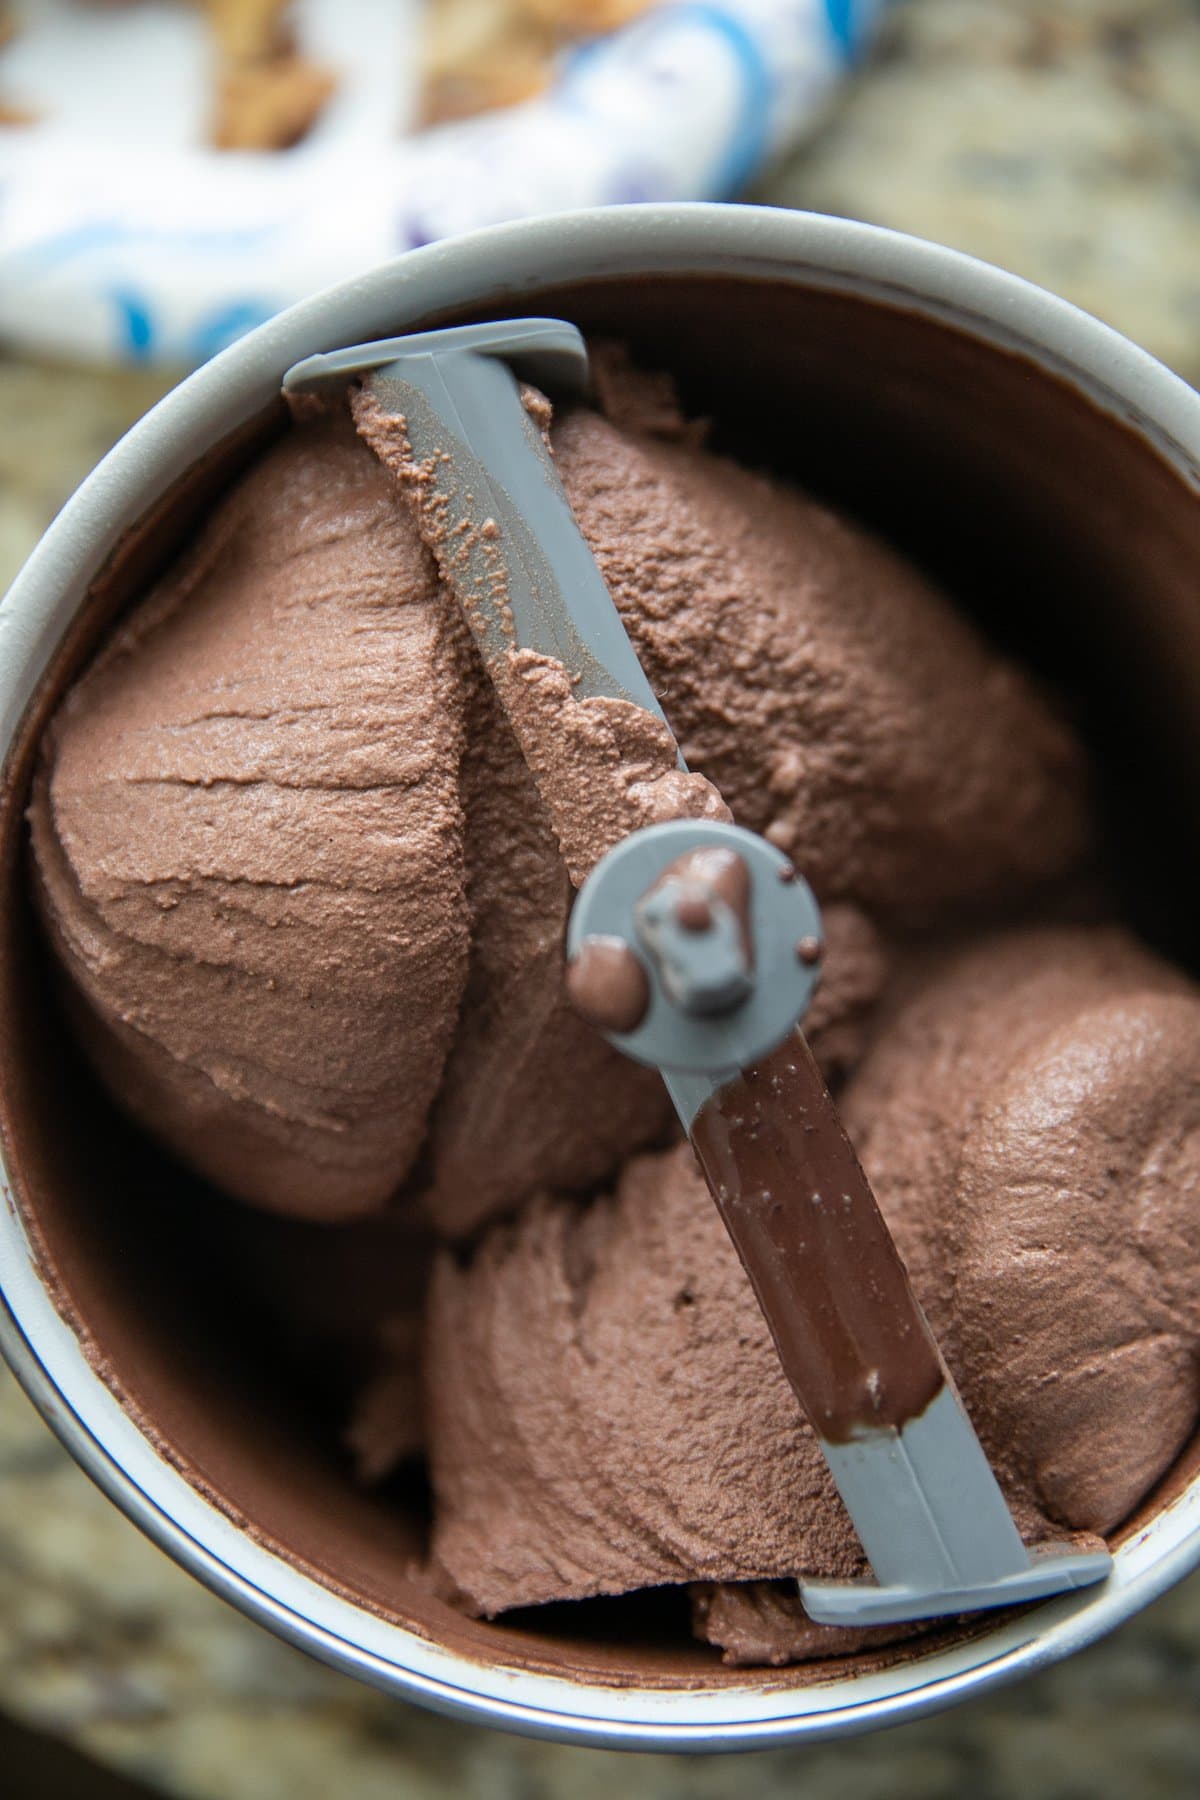 ice cream machine churning chocolate ice cream